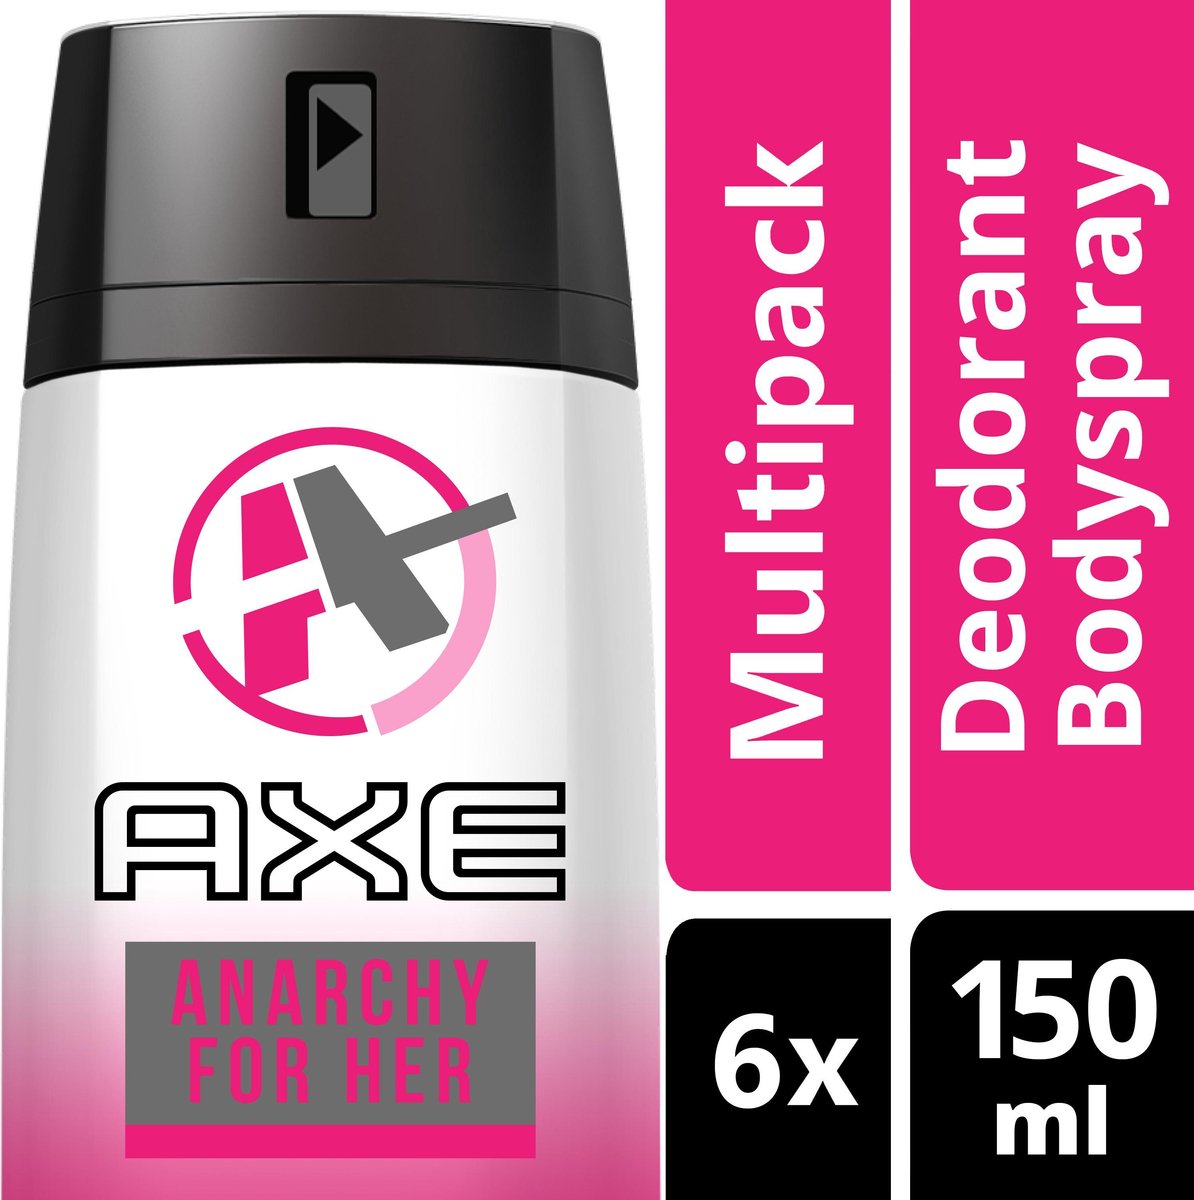 Passief advies landelijk Axe Anarchy For Women - 150 ml - Deodorant Spray - 6 stuks -  Voordeelverpakking | bol.com